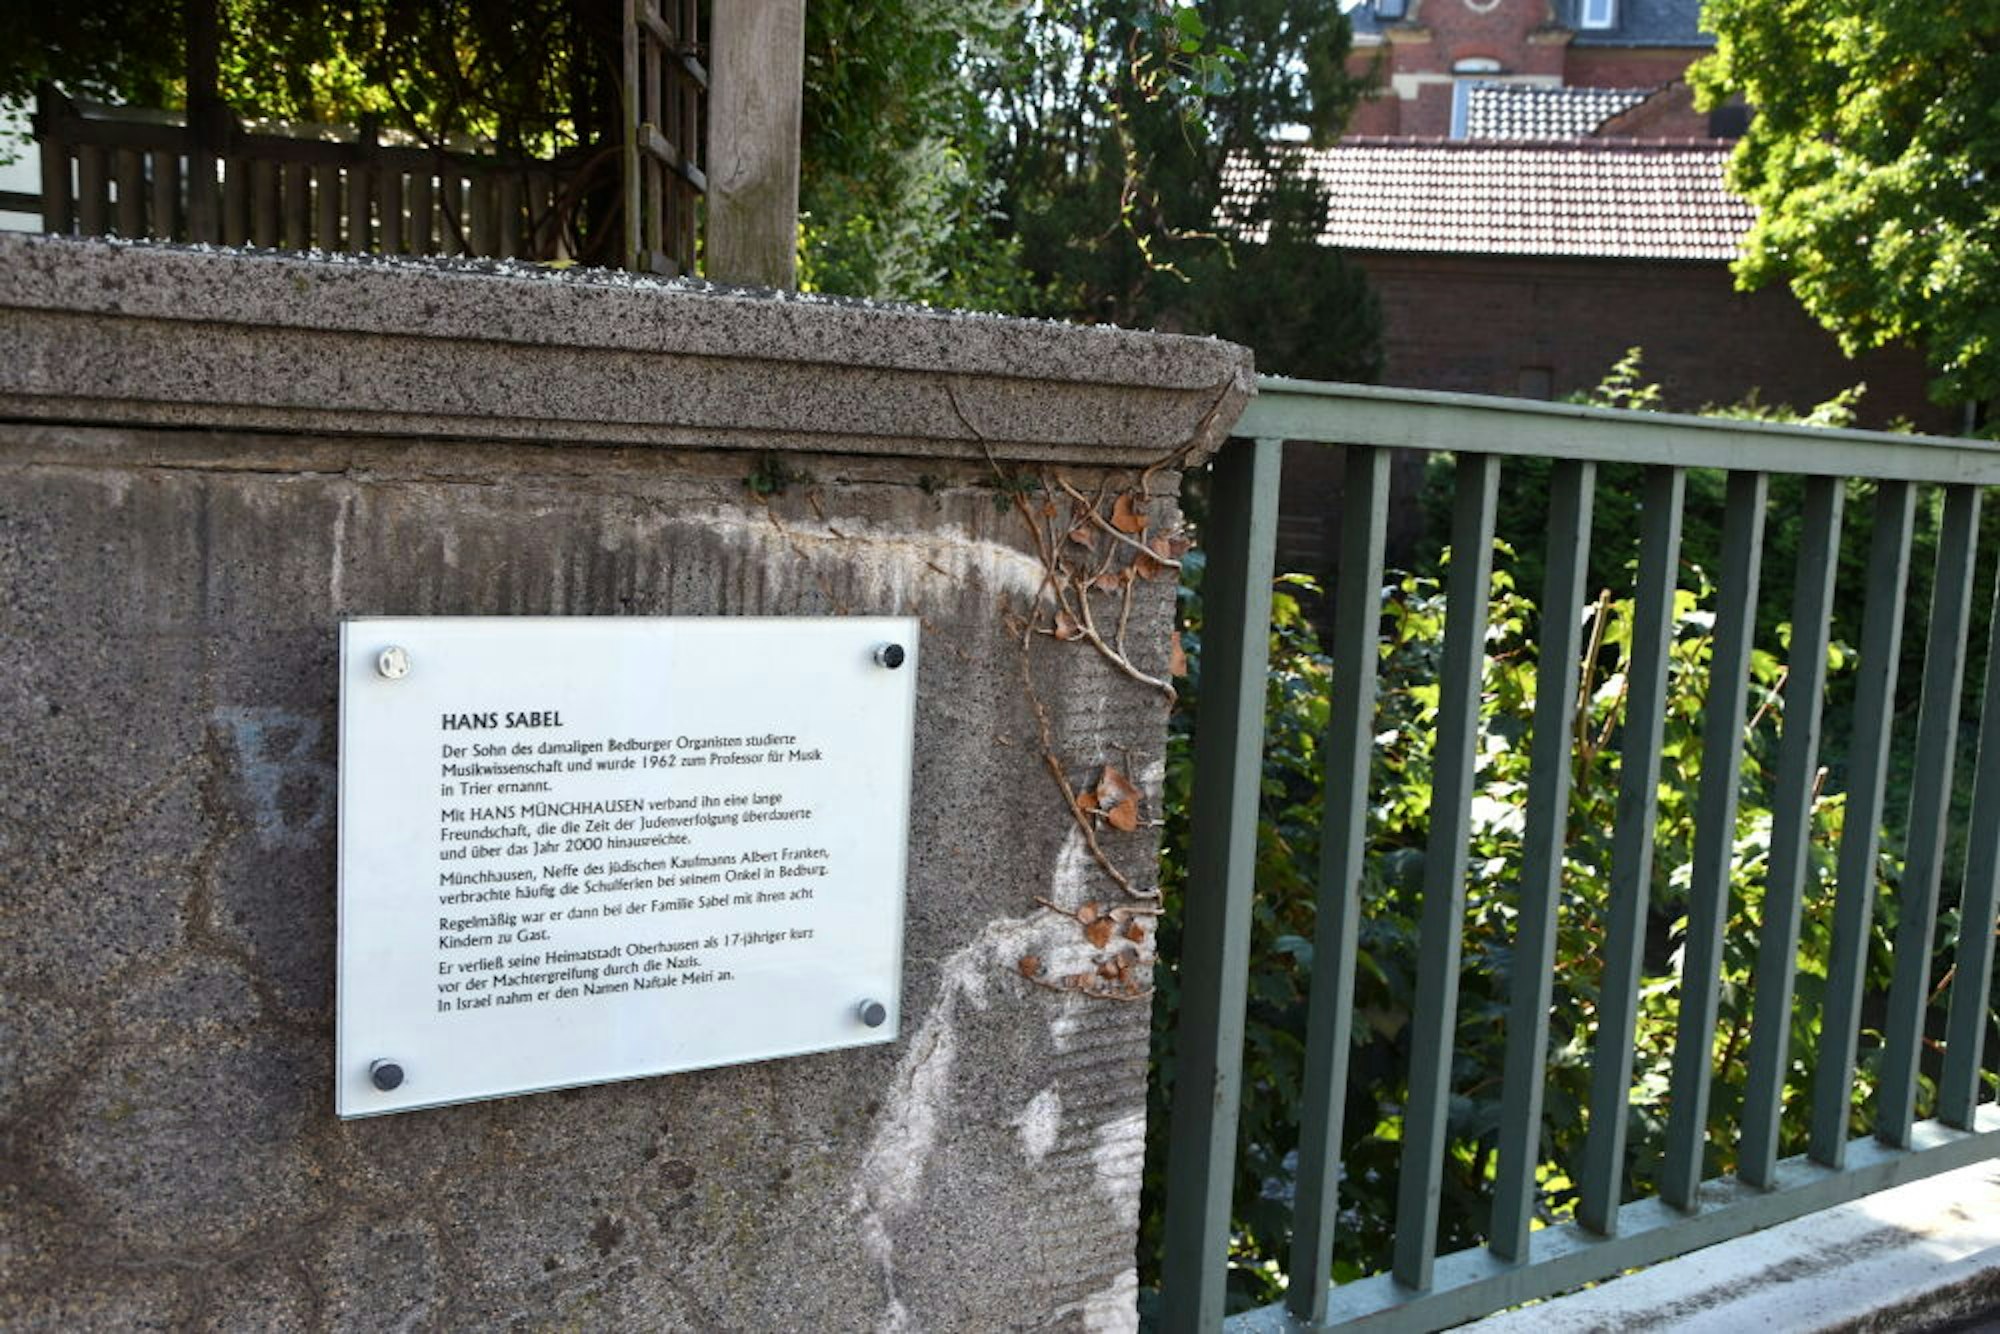 Gedenktafeln am jüdischen Friedhof, an der Nepomuk-Brücke (Bild) und am Rathaus erinnern an die jüdische Geschichte in der Stadt.